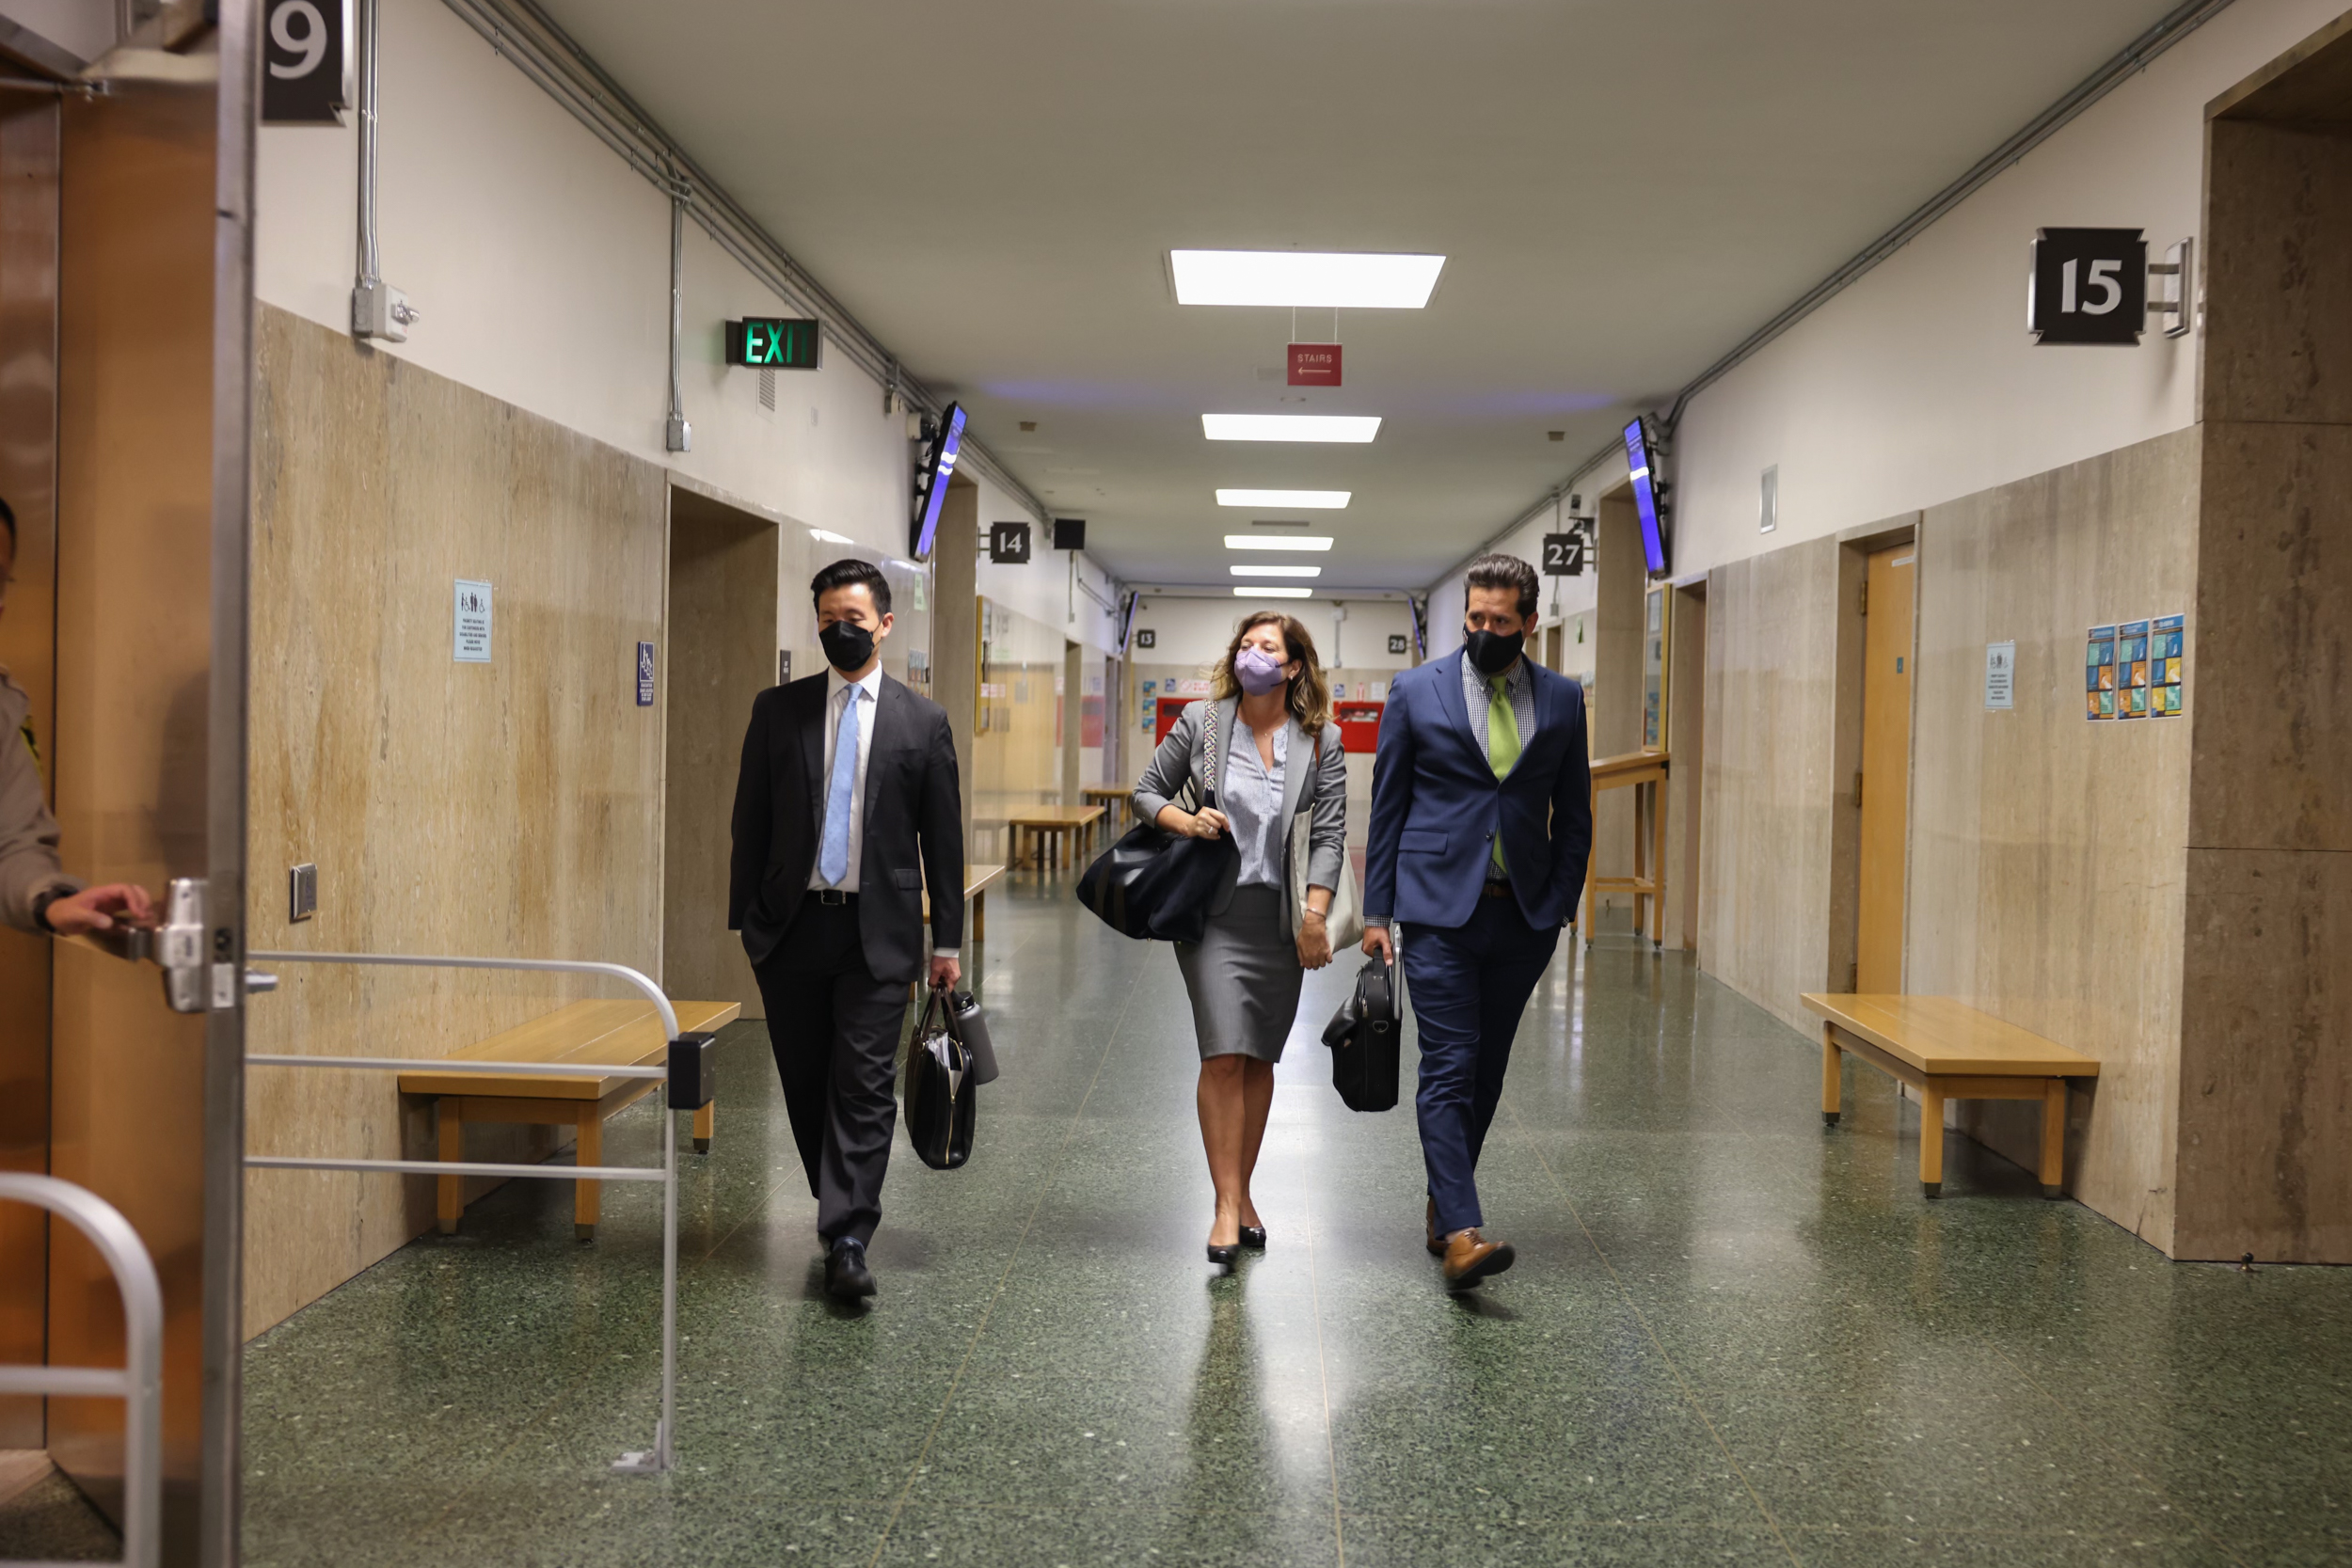 Three people walk through a hallway.